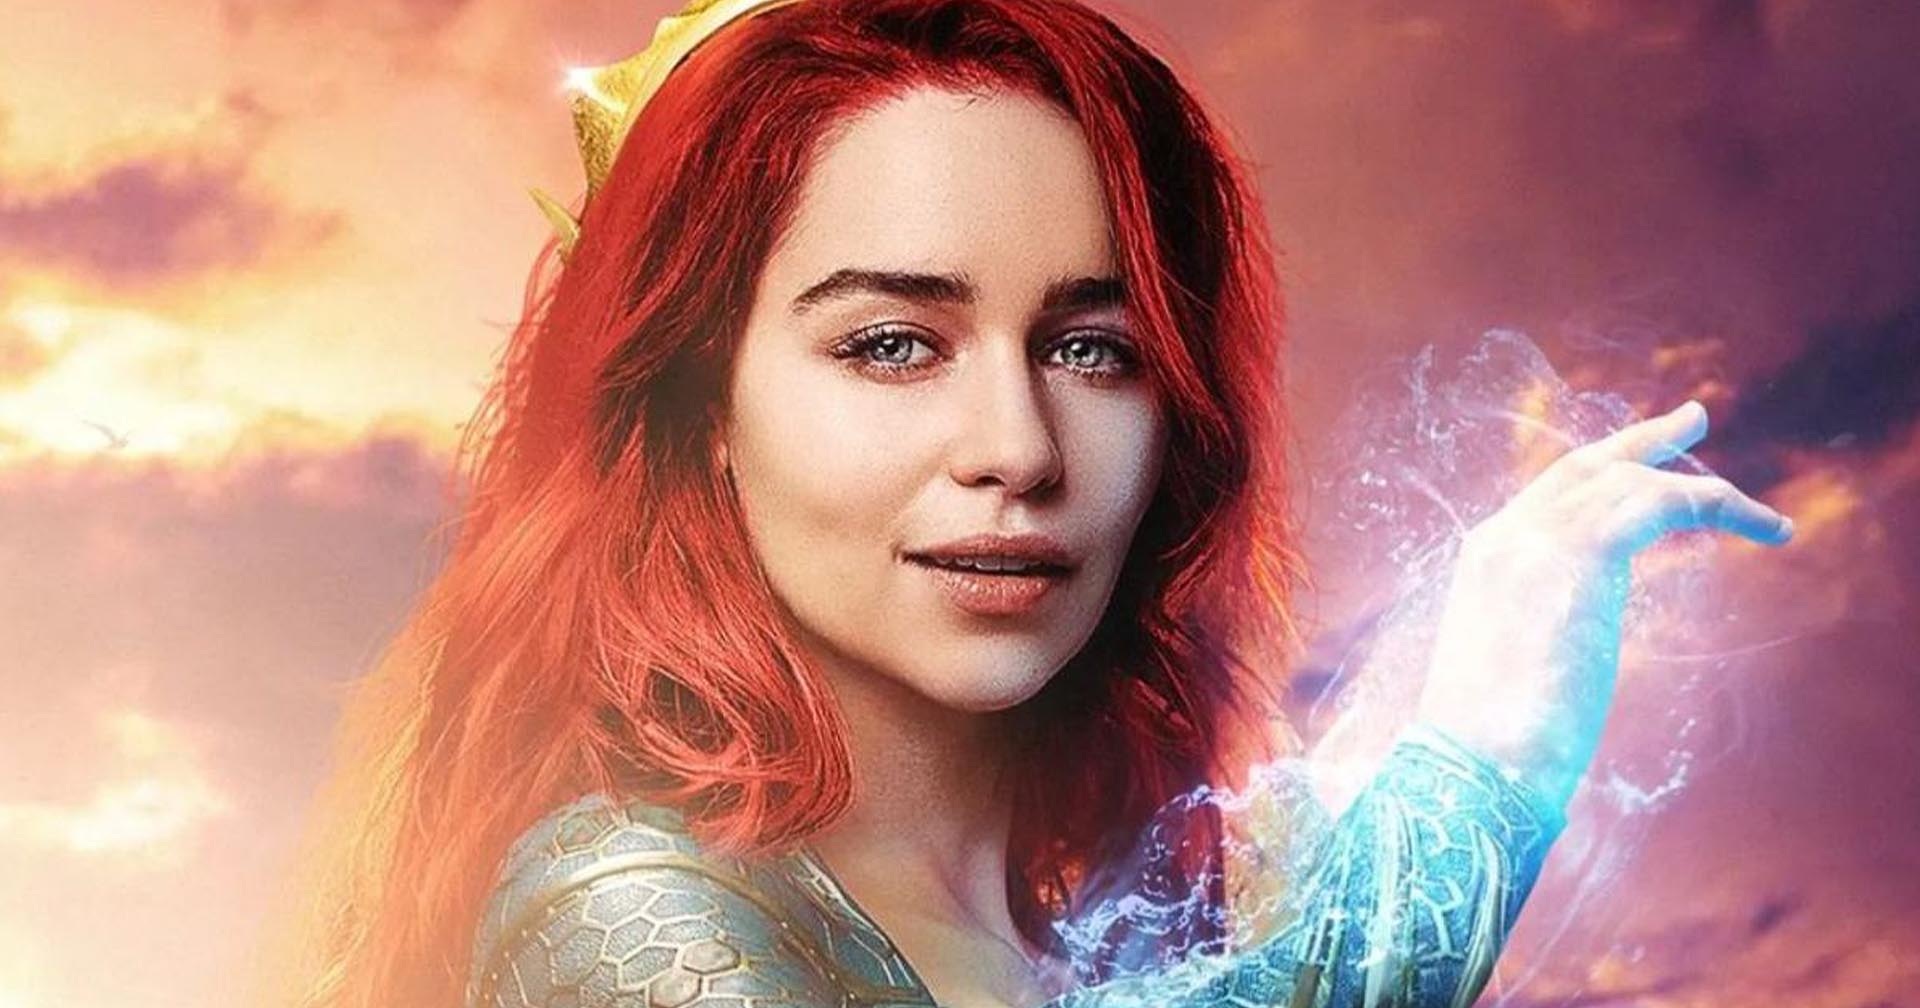 กระแสแฟน ๆ เรียกร้องให้ Emilia Clarke มารับบท ‘เมรา’ แทน Amber Heard ใน Aquaman 2